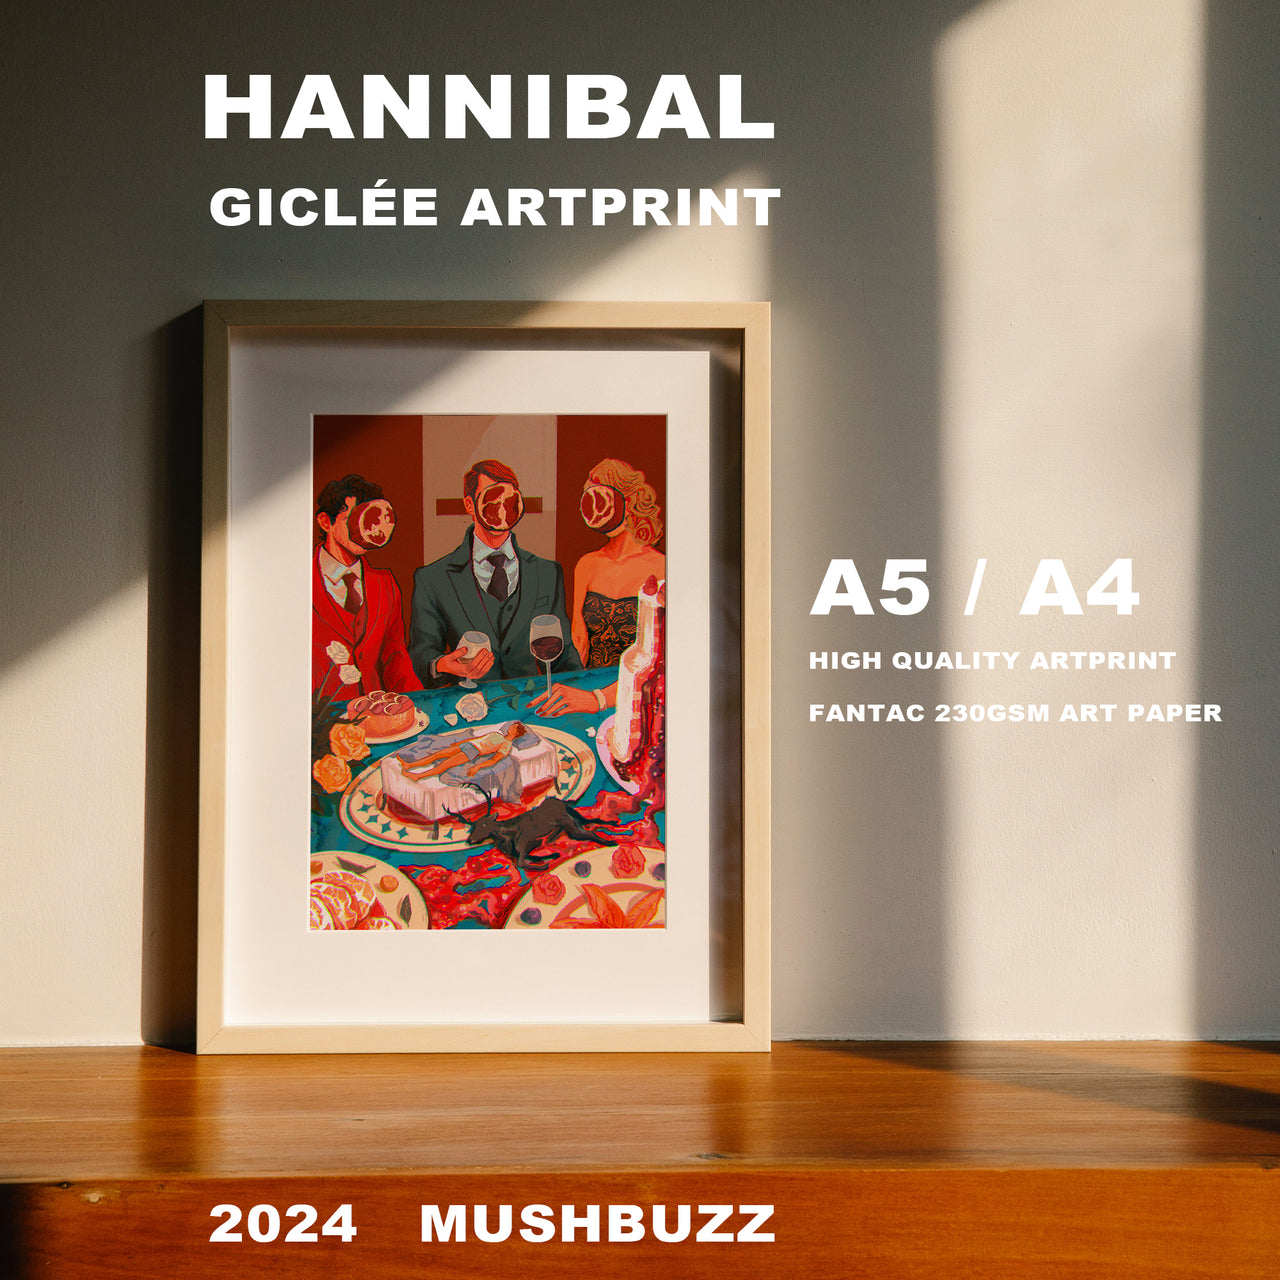 Hannibal Giclee Artprints